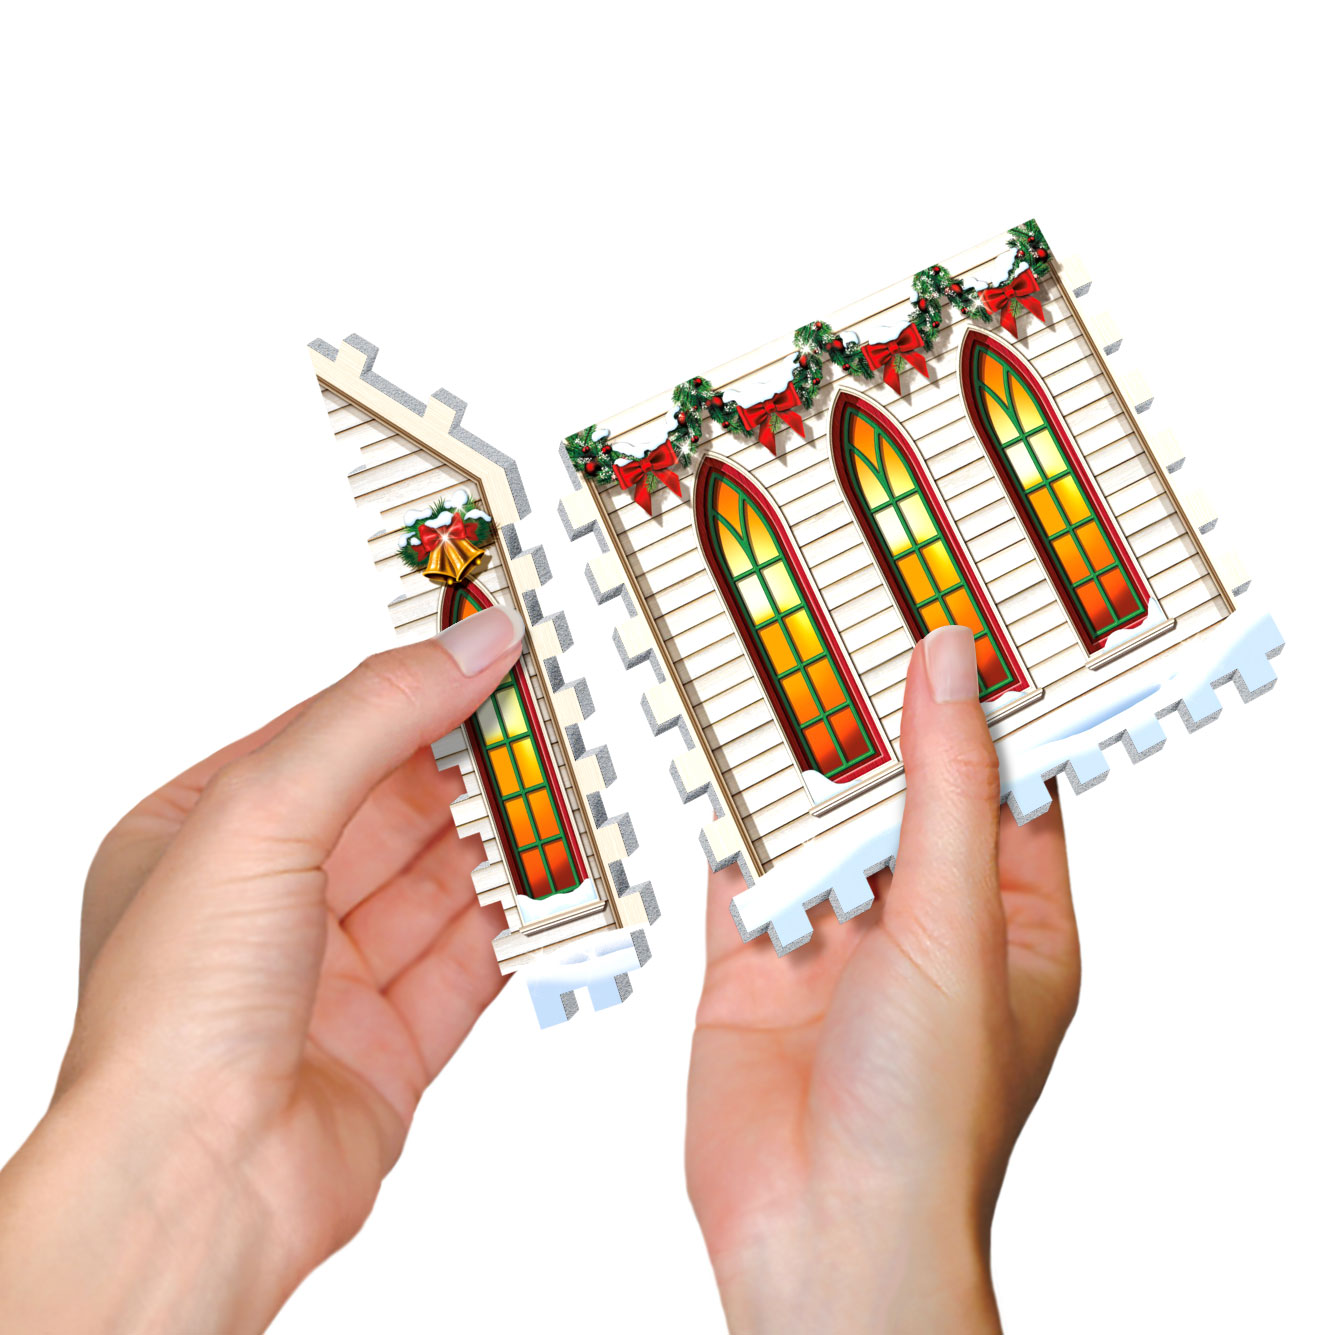 WREBBIT 3D JIGSAW PUZZLE THE CHRISTMAS VILLAGE 116 PCS #WSP-5601 